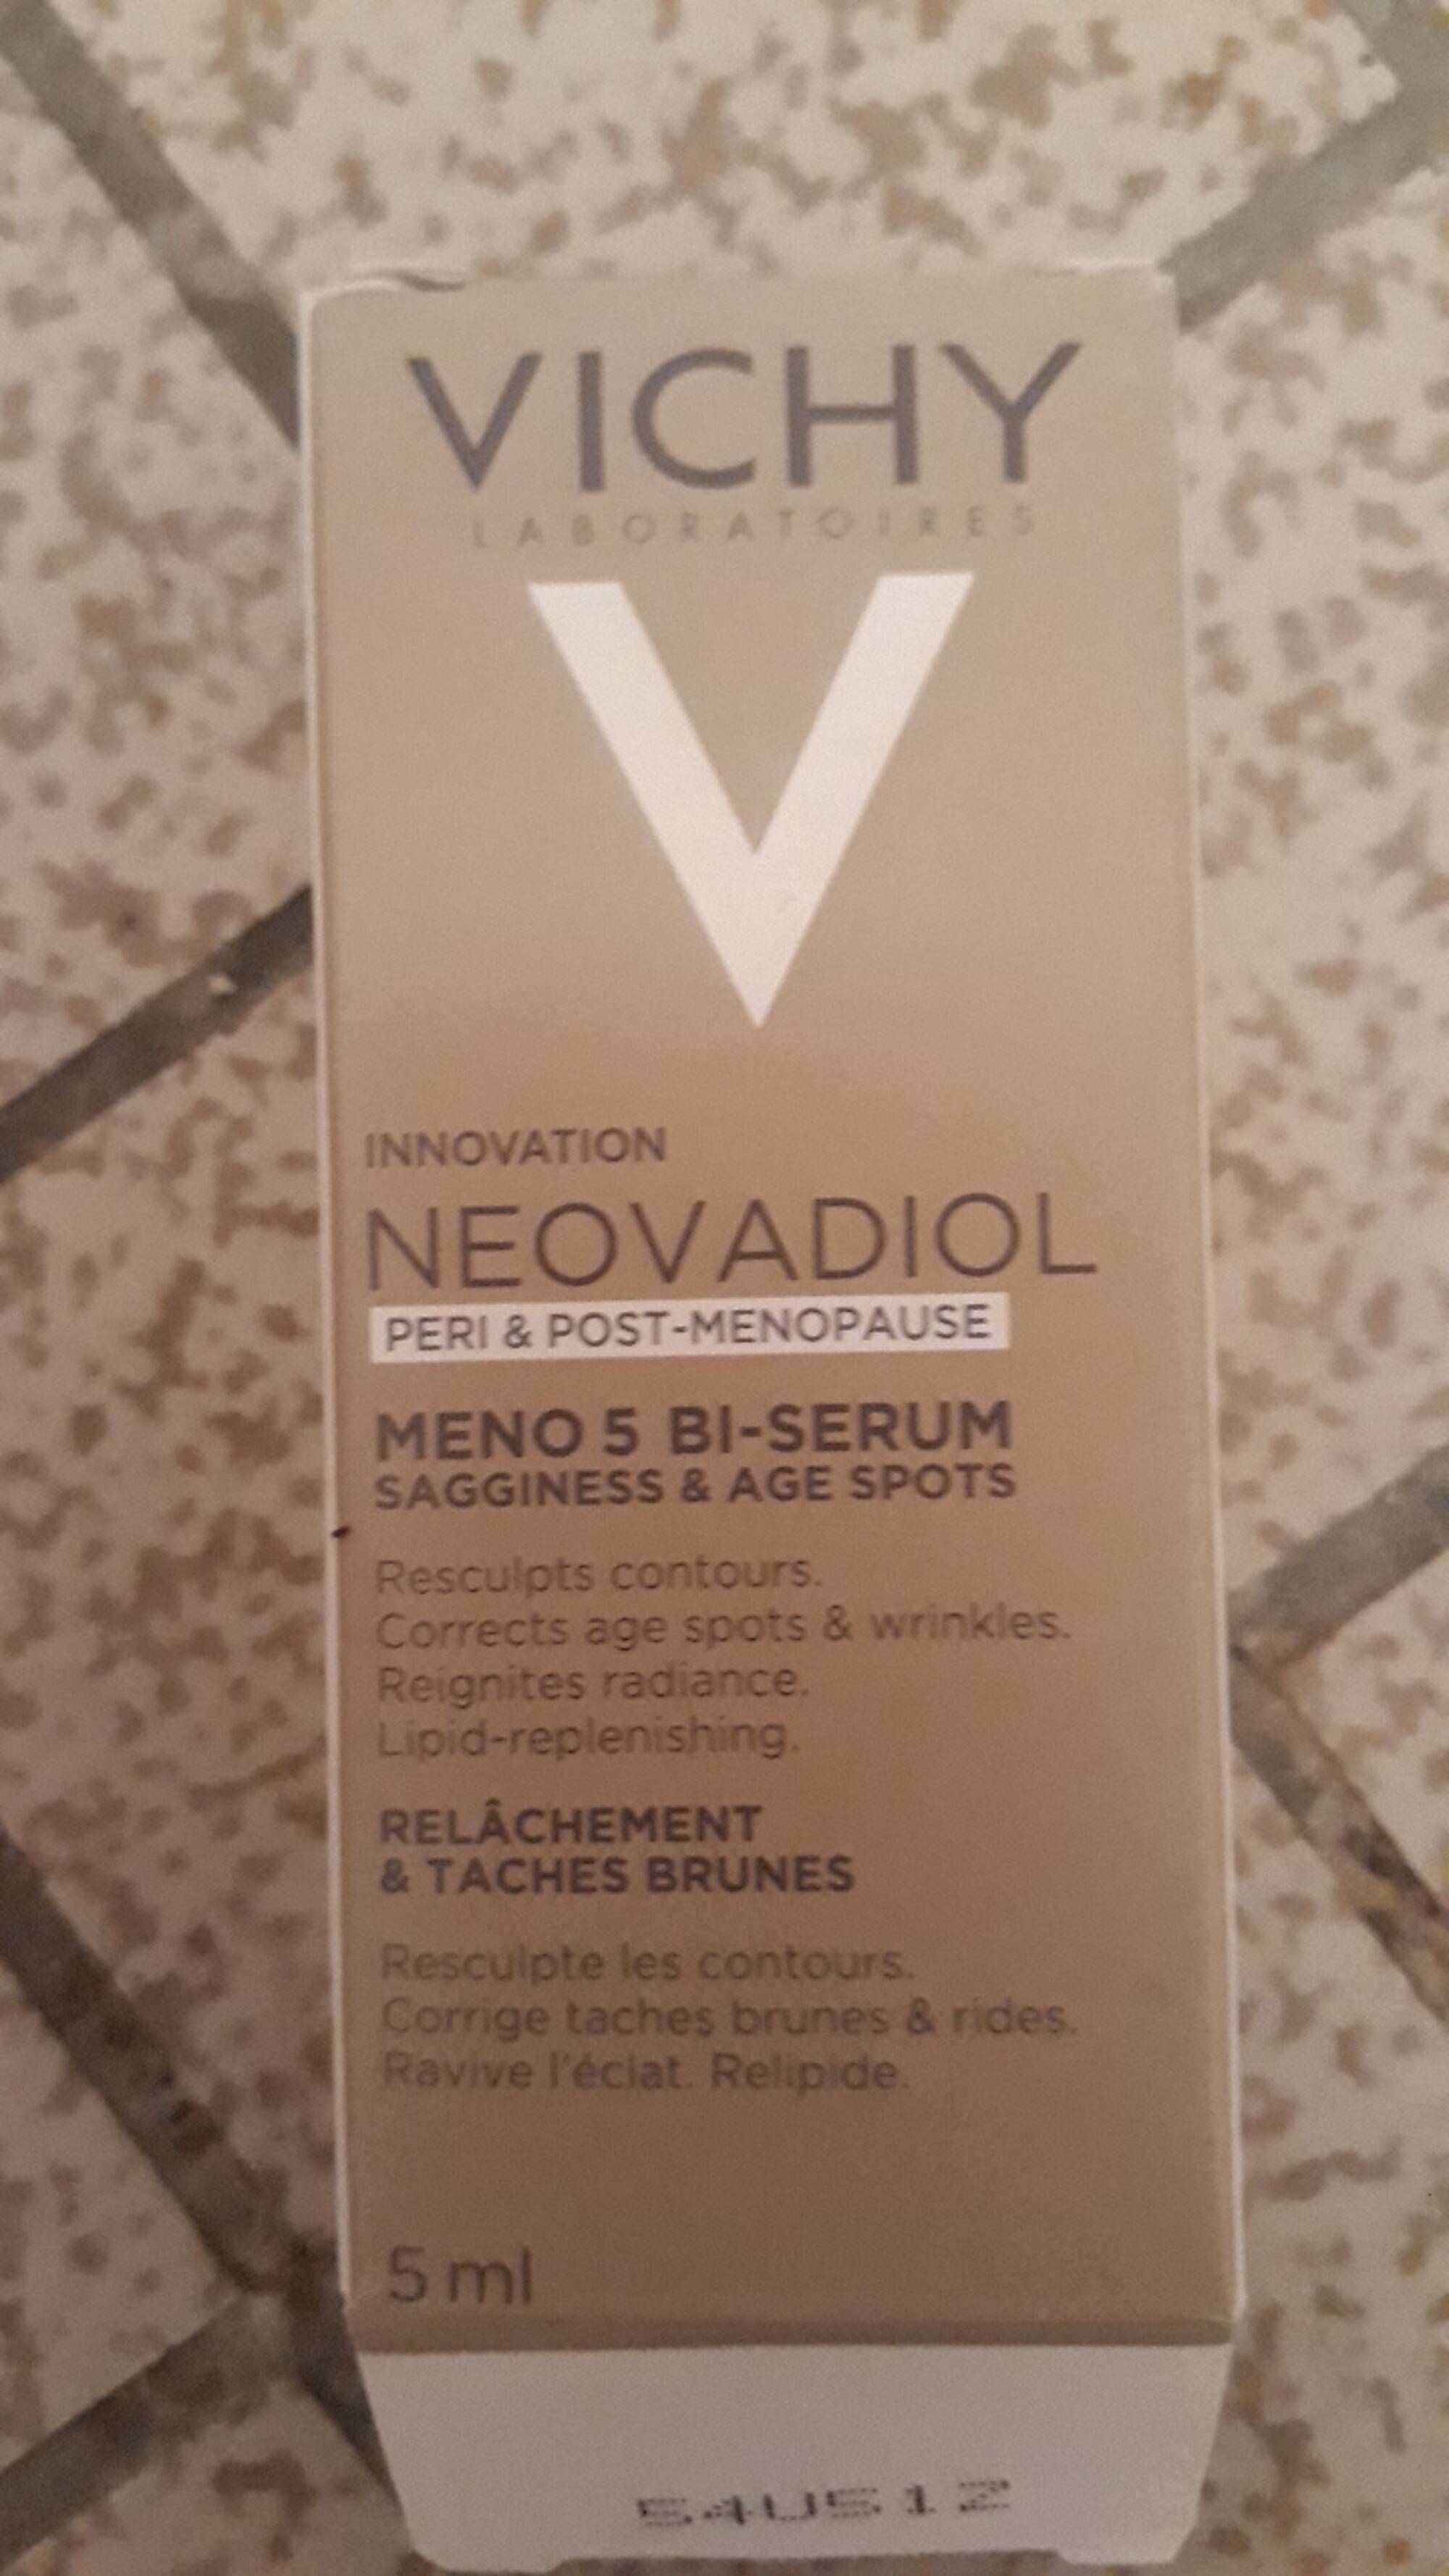 VICHY - Neovadiol - Meno 5 bi-serum